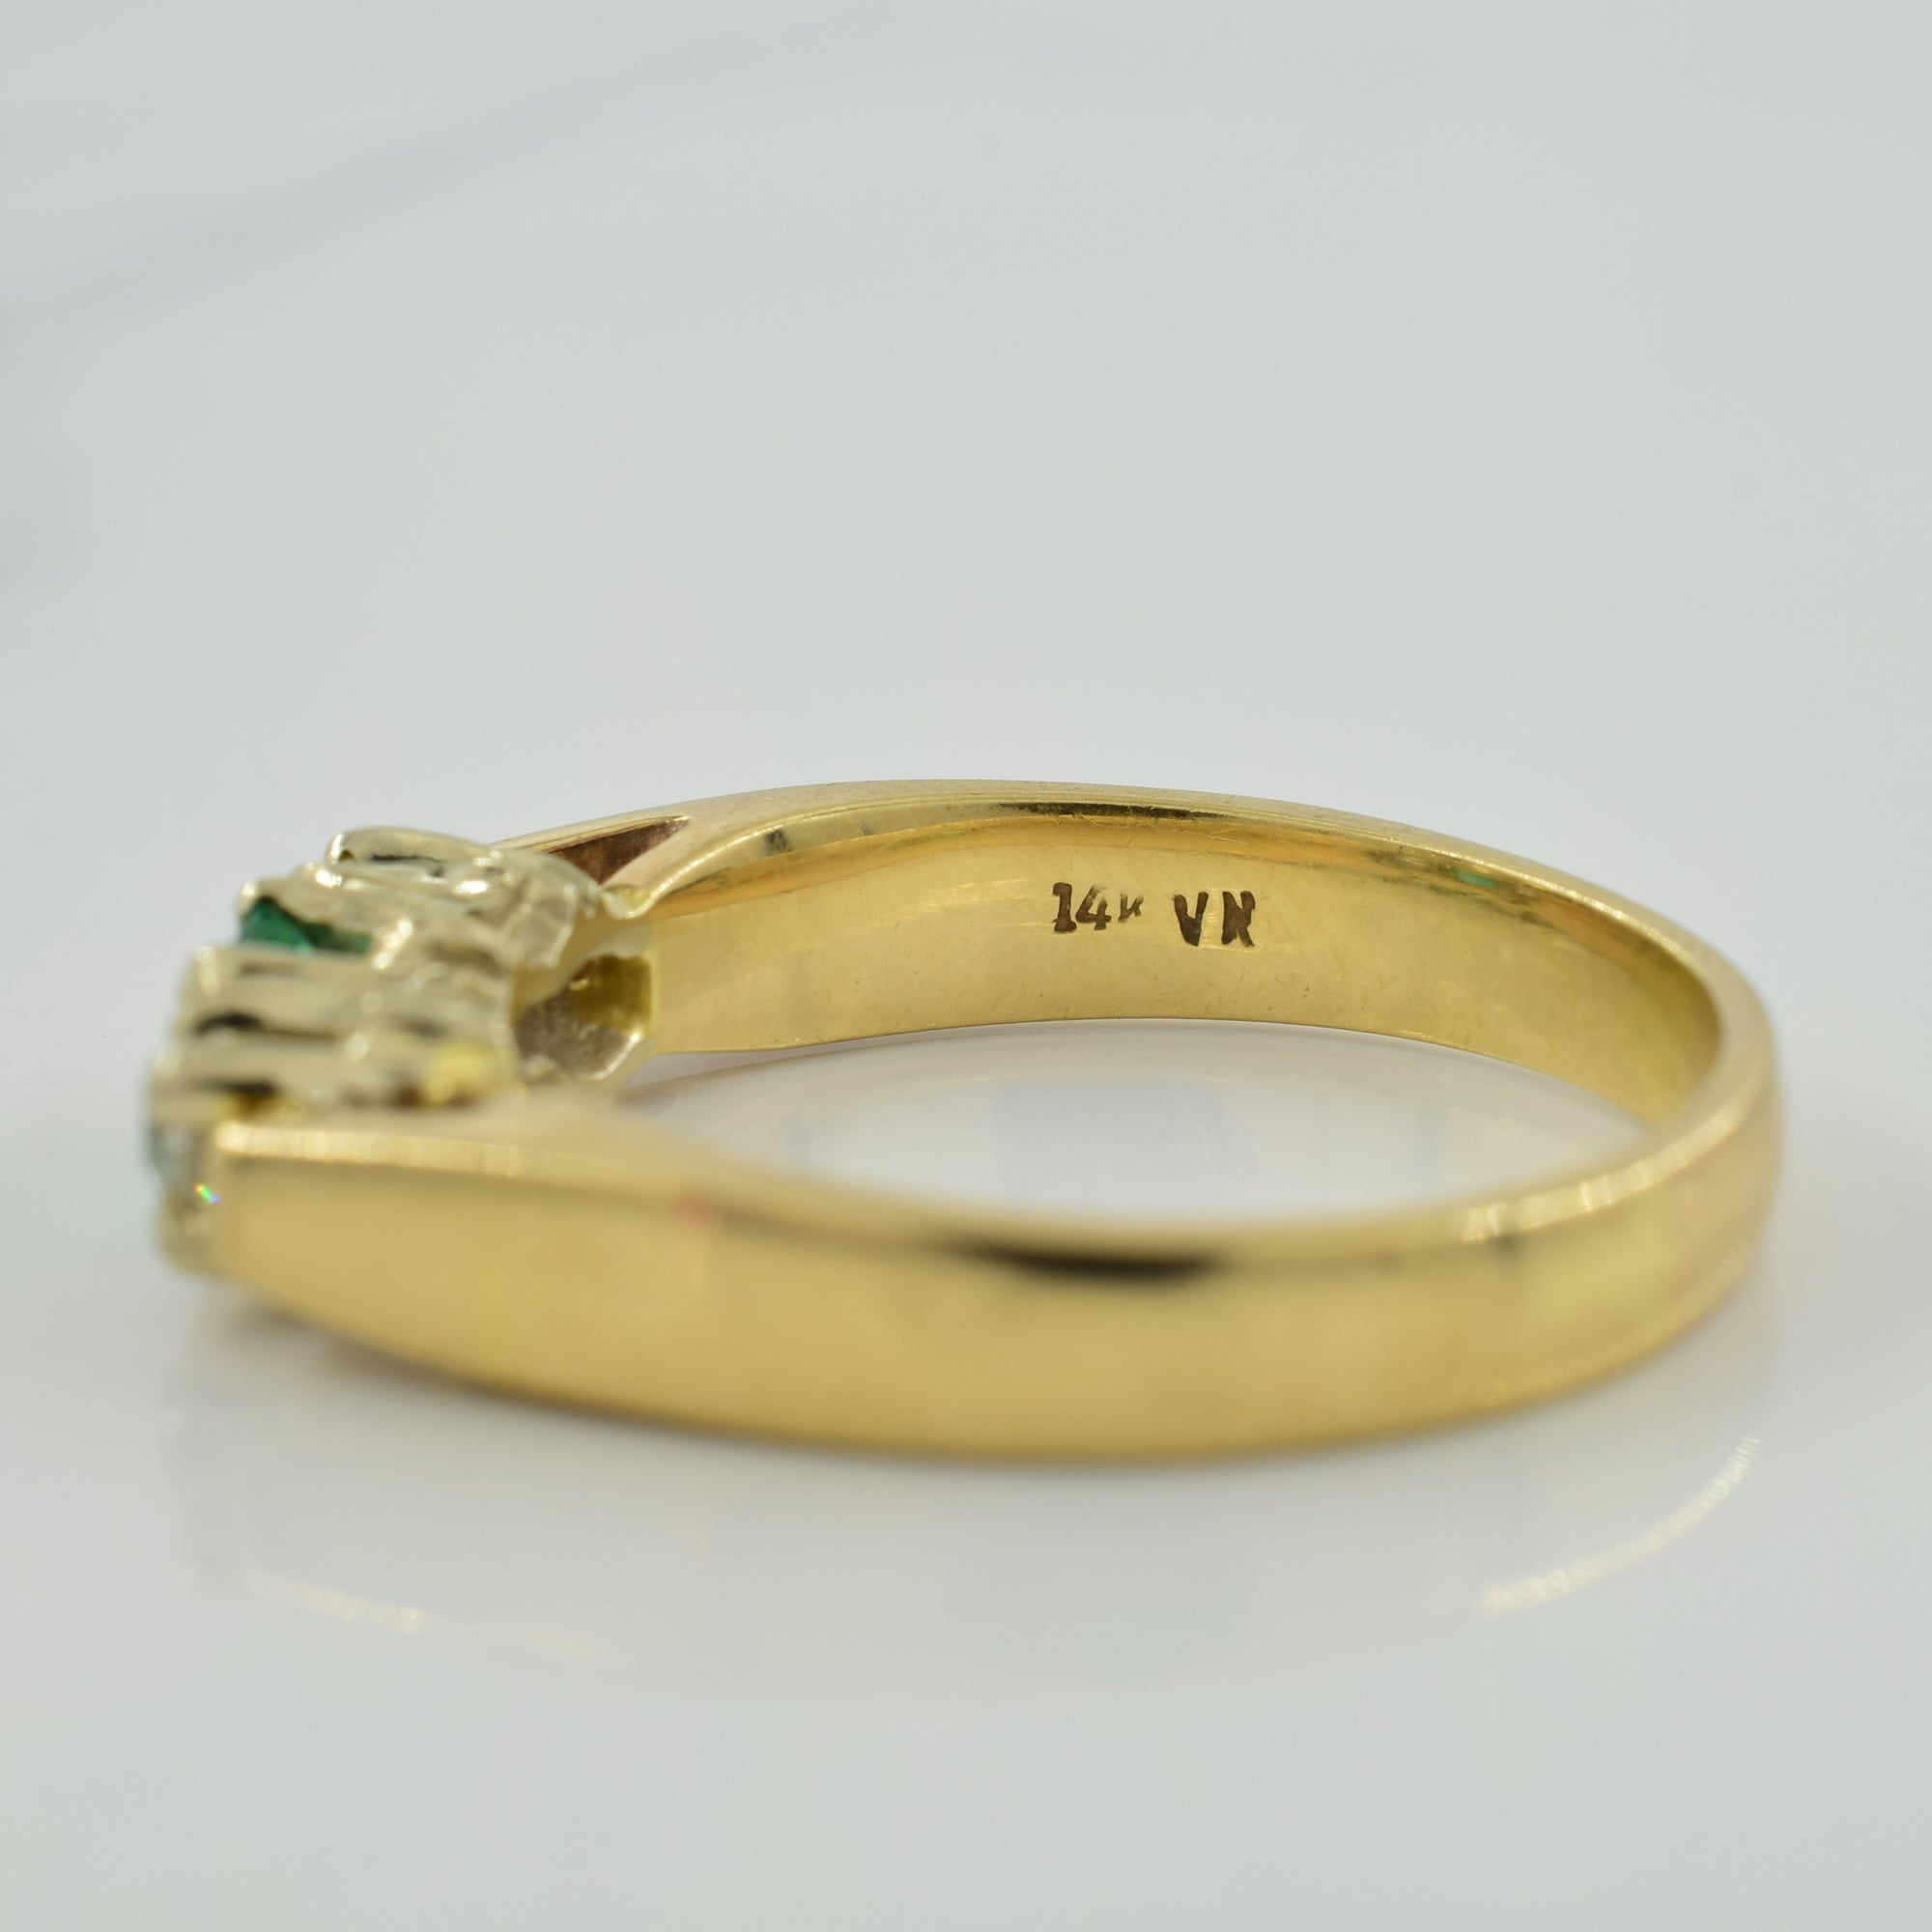 Emerald & Diamond Ring | 0.26ct, 0.20ctw | SZ 8.5